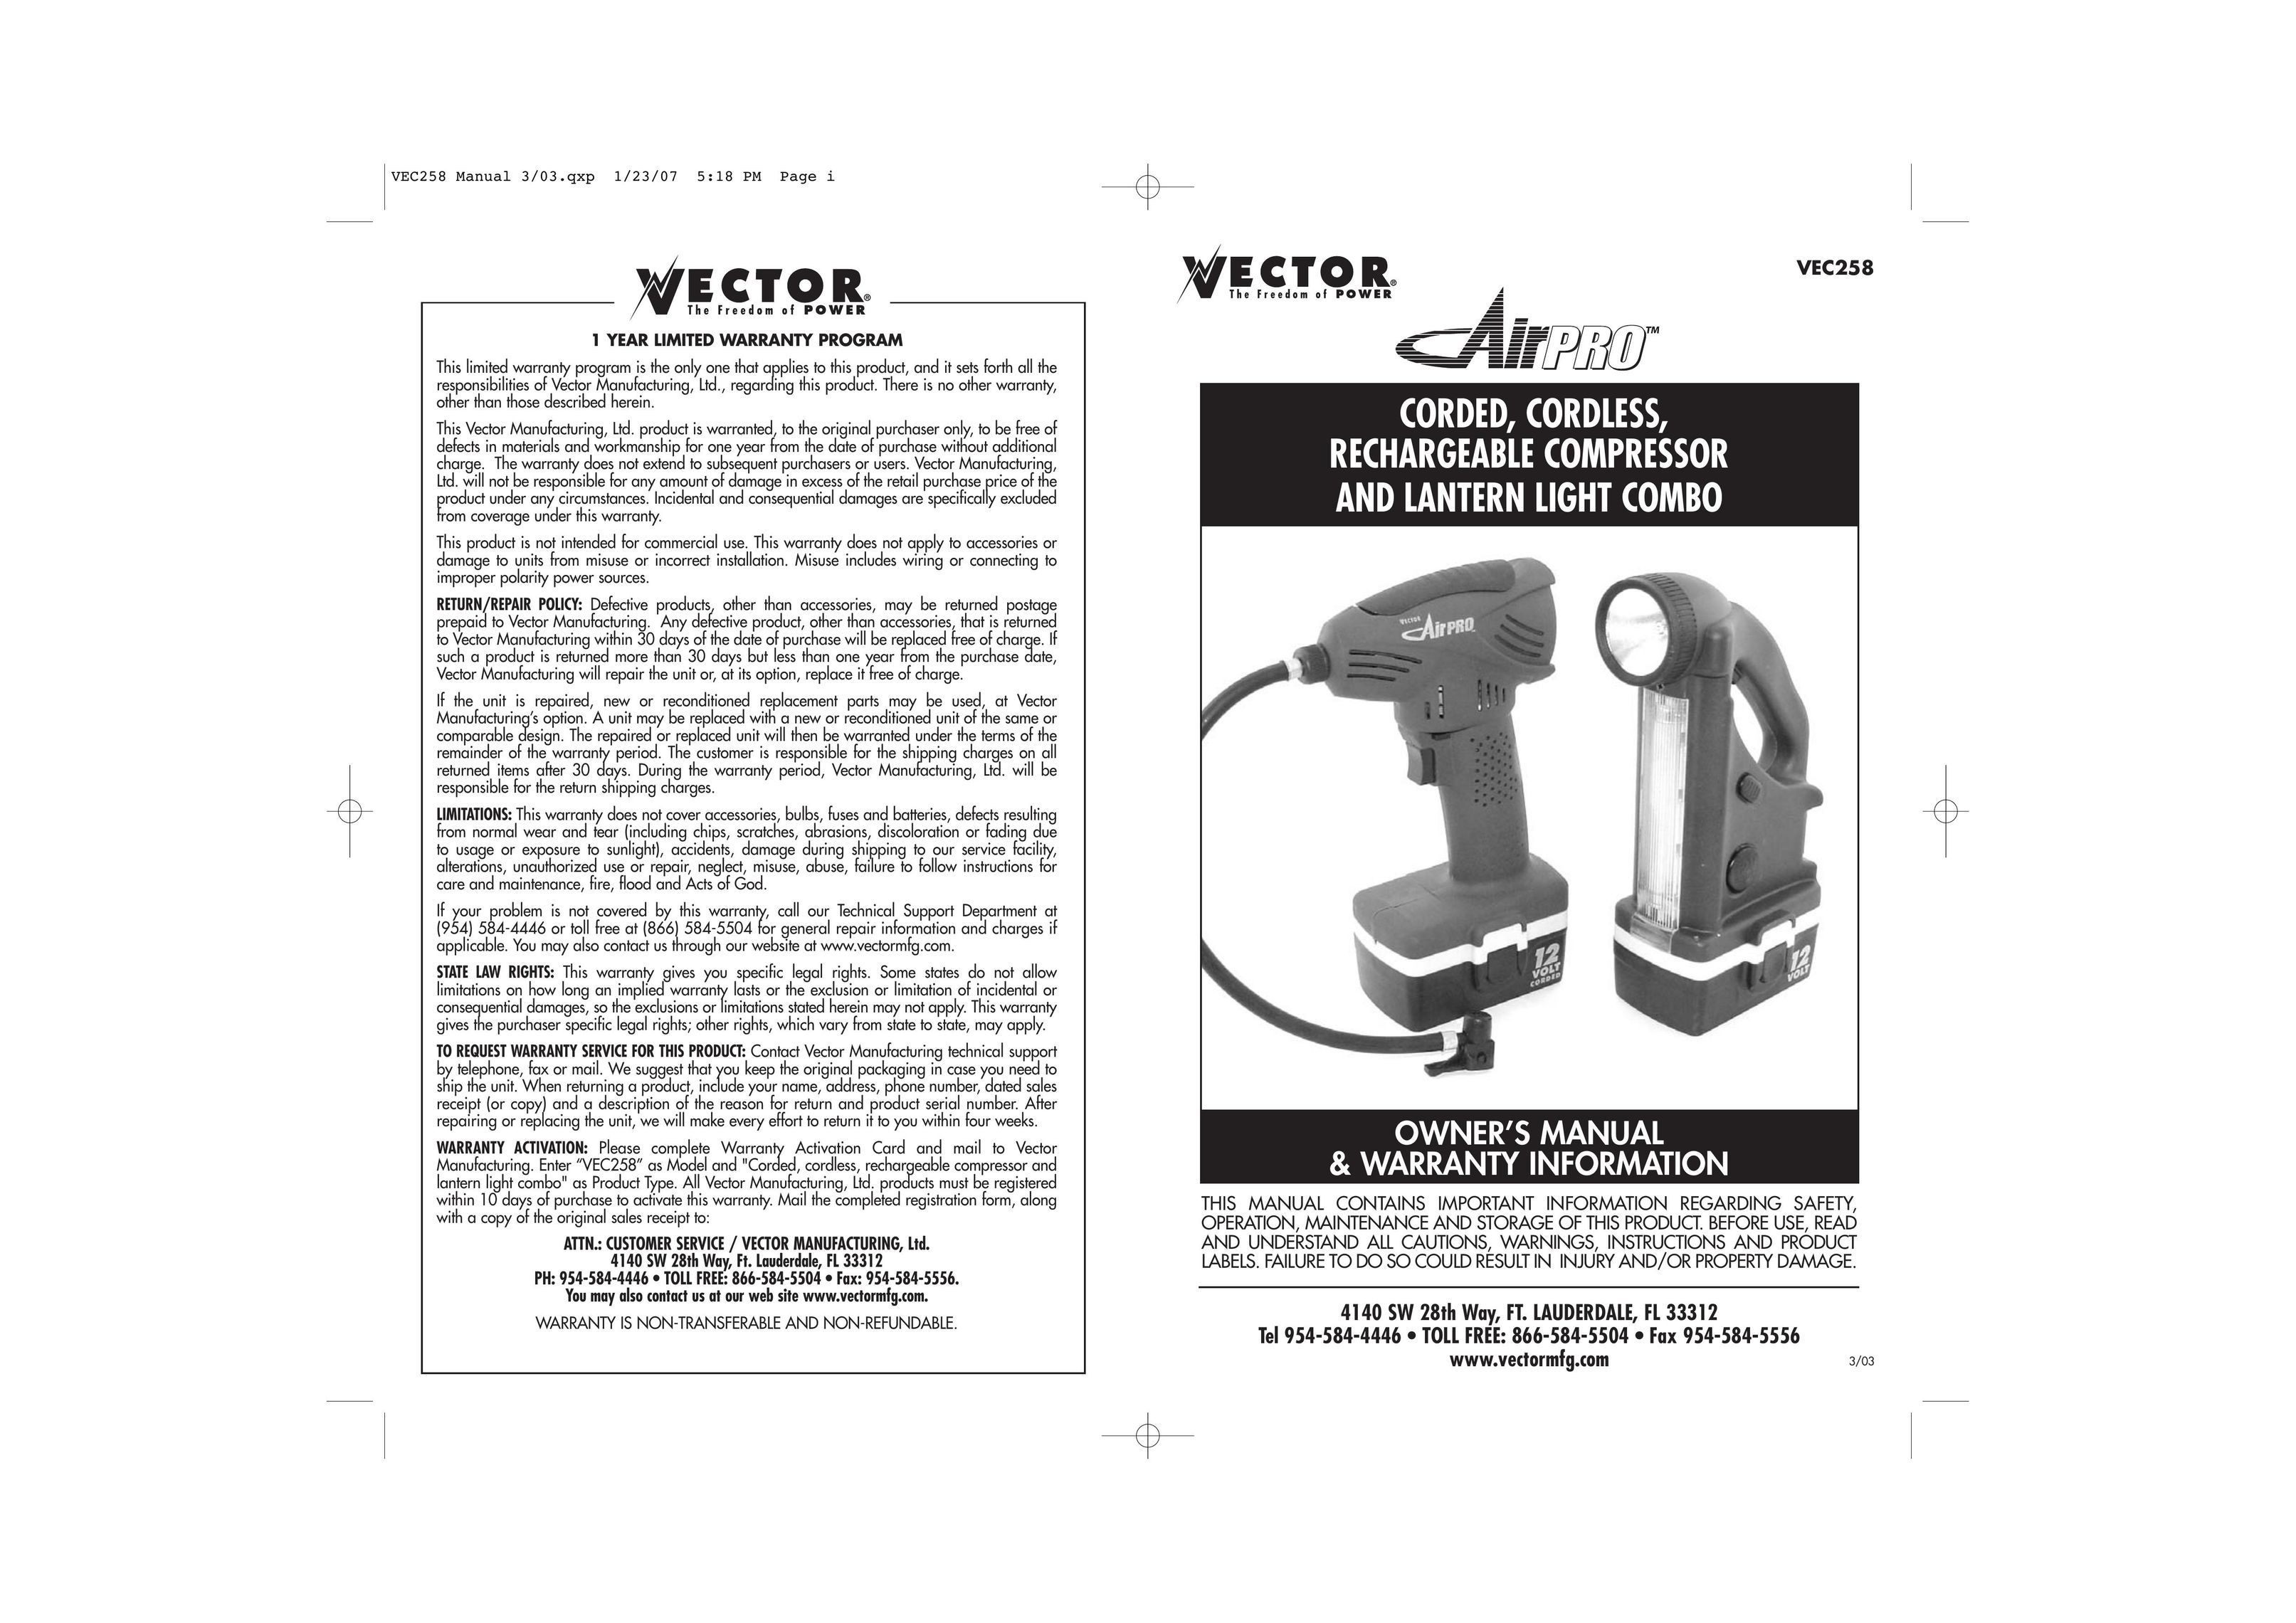 Vector VEC258 Air Compressor User Manual